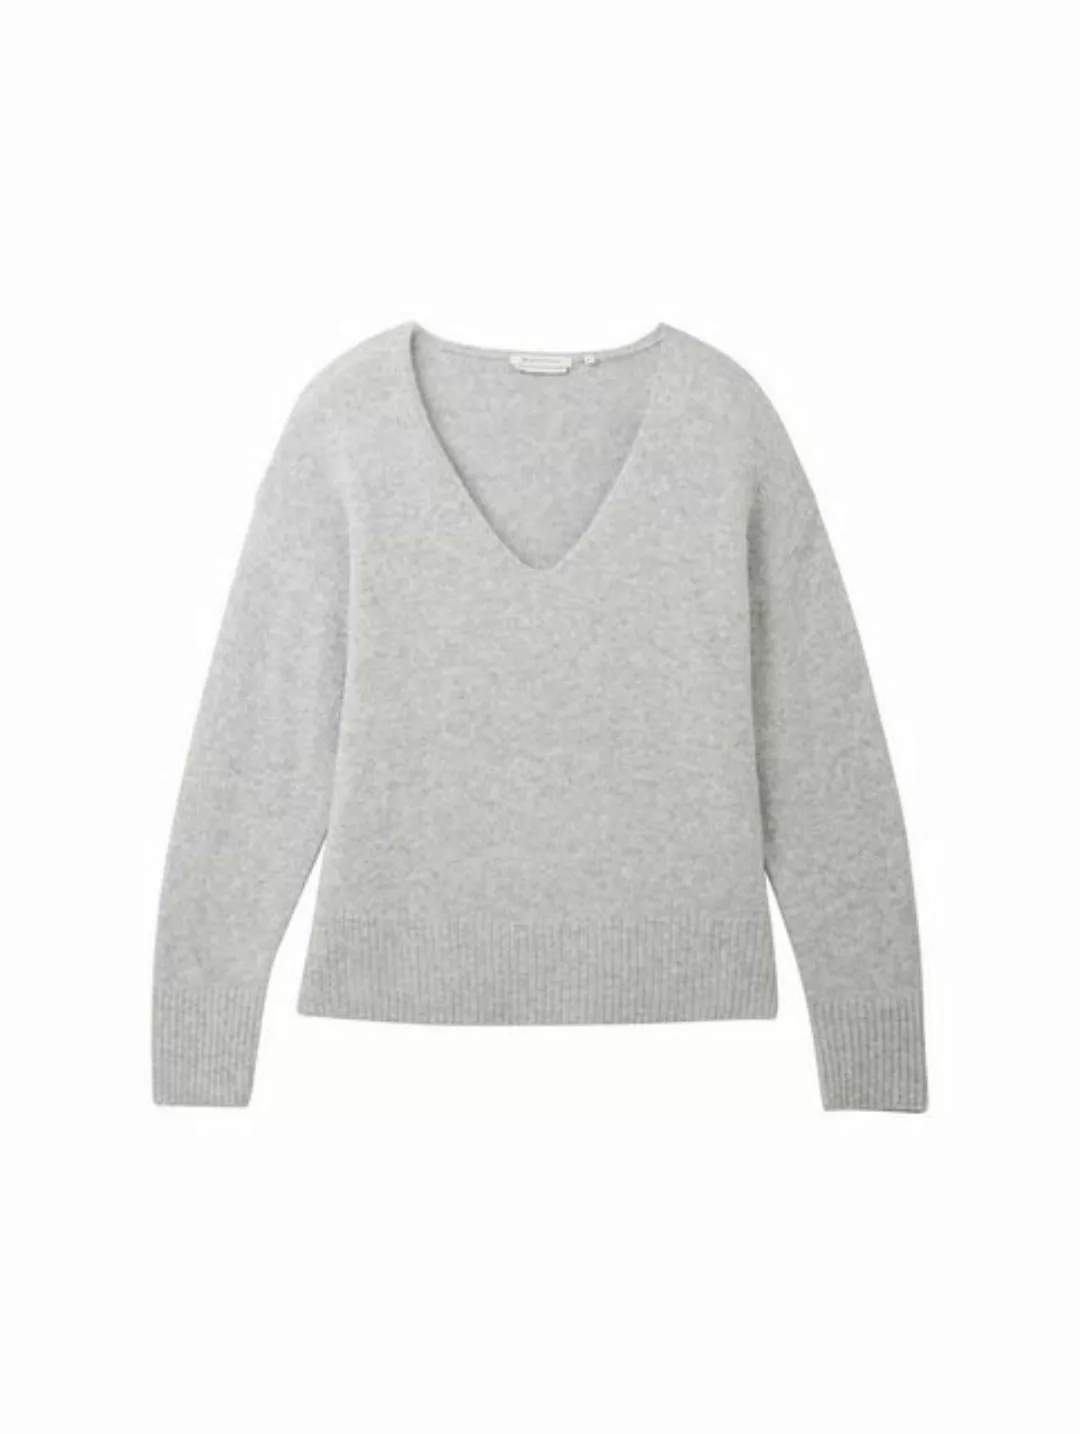 TOM TAILOR Denim V-Ausschnitt-Pullover, mit tiefem V-Ausschnitt günstig online kaufen